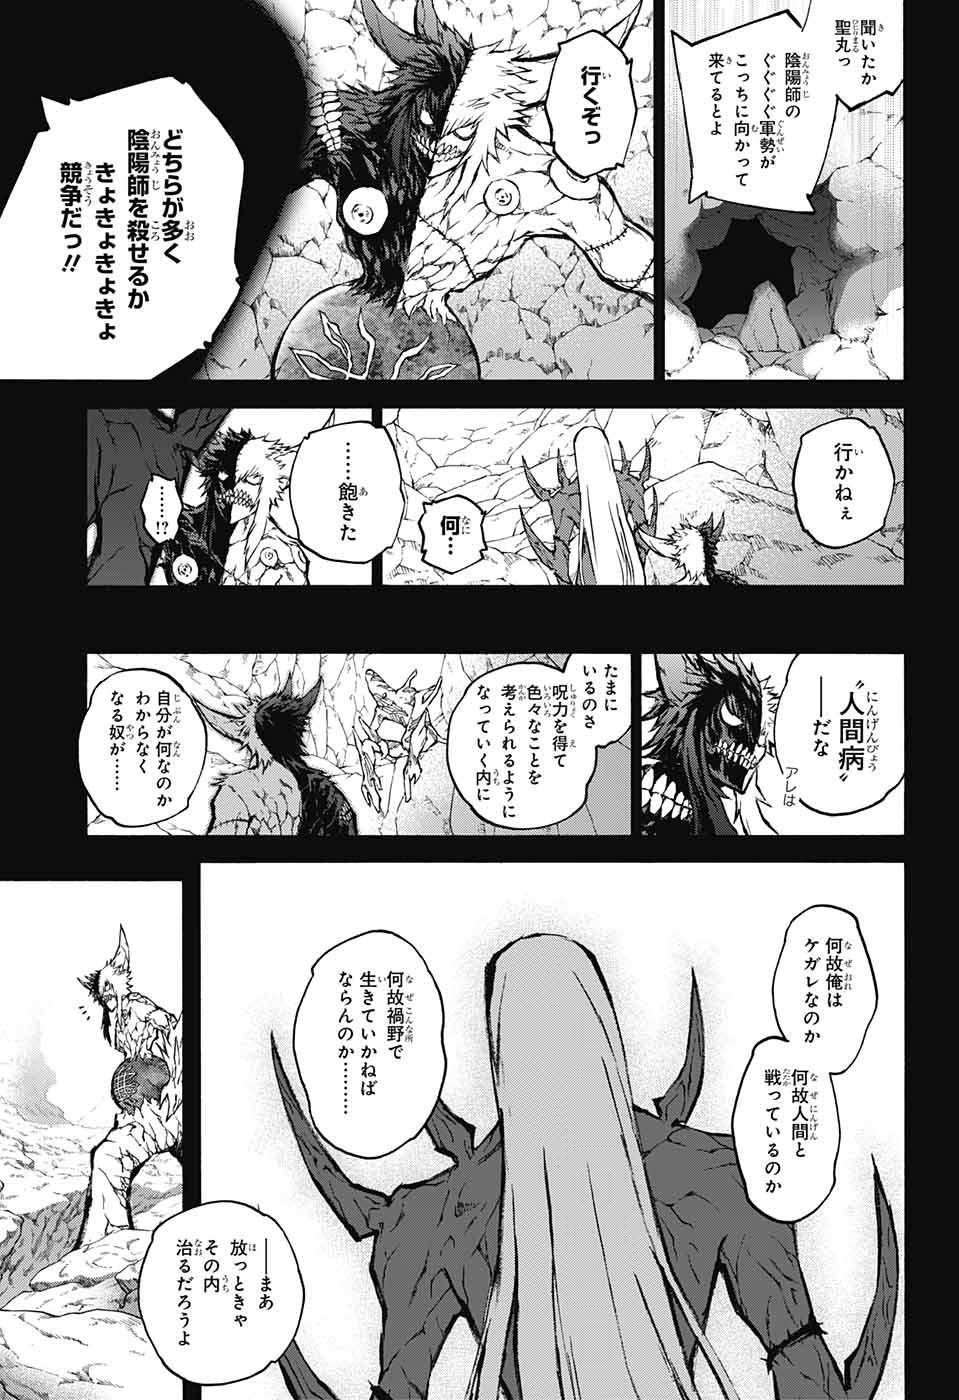 Sousei no Onmyouji - Chapter 61 - Page 3